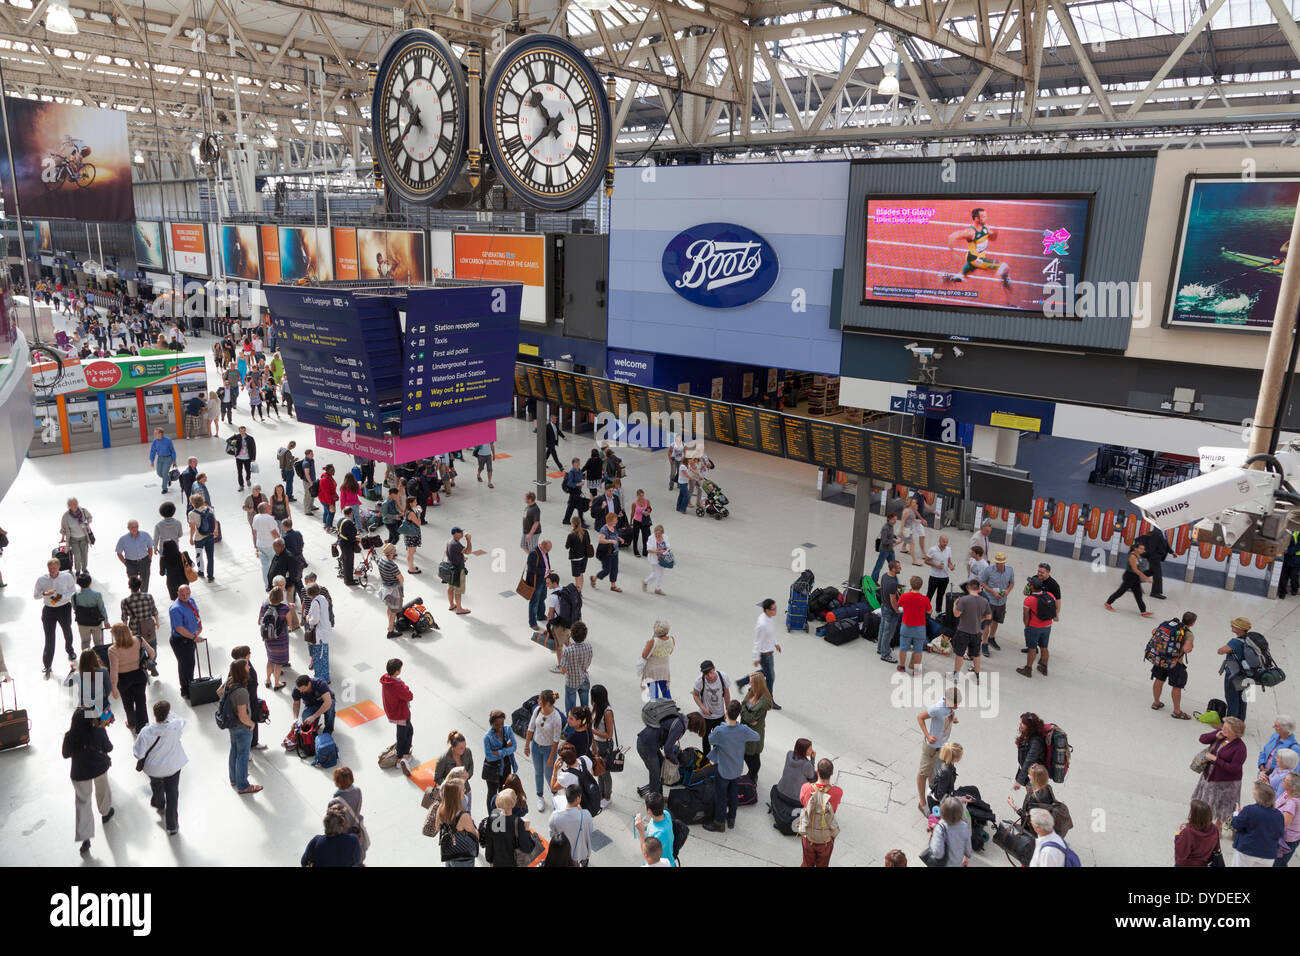 Unter der Uhr bei Waterloo Bahnhofshalle in London von einem hohen Aussichtspunkt. Stockfoto